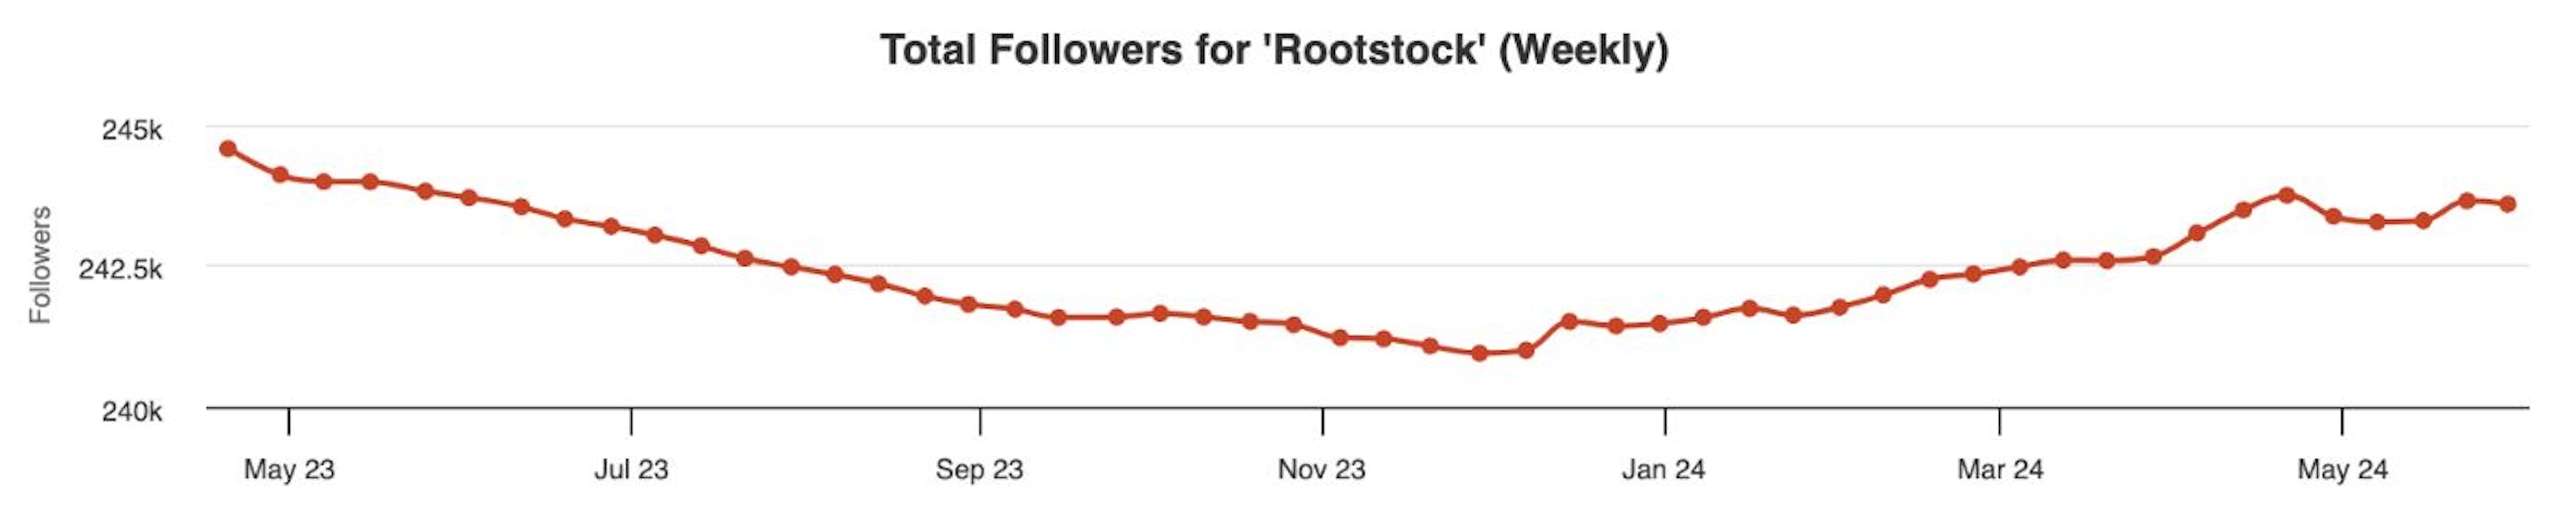 Rootstock Twitter followers dynamic